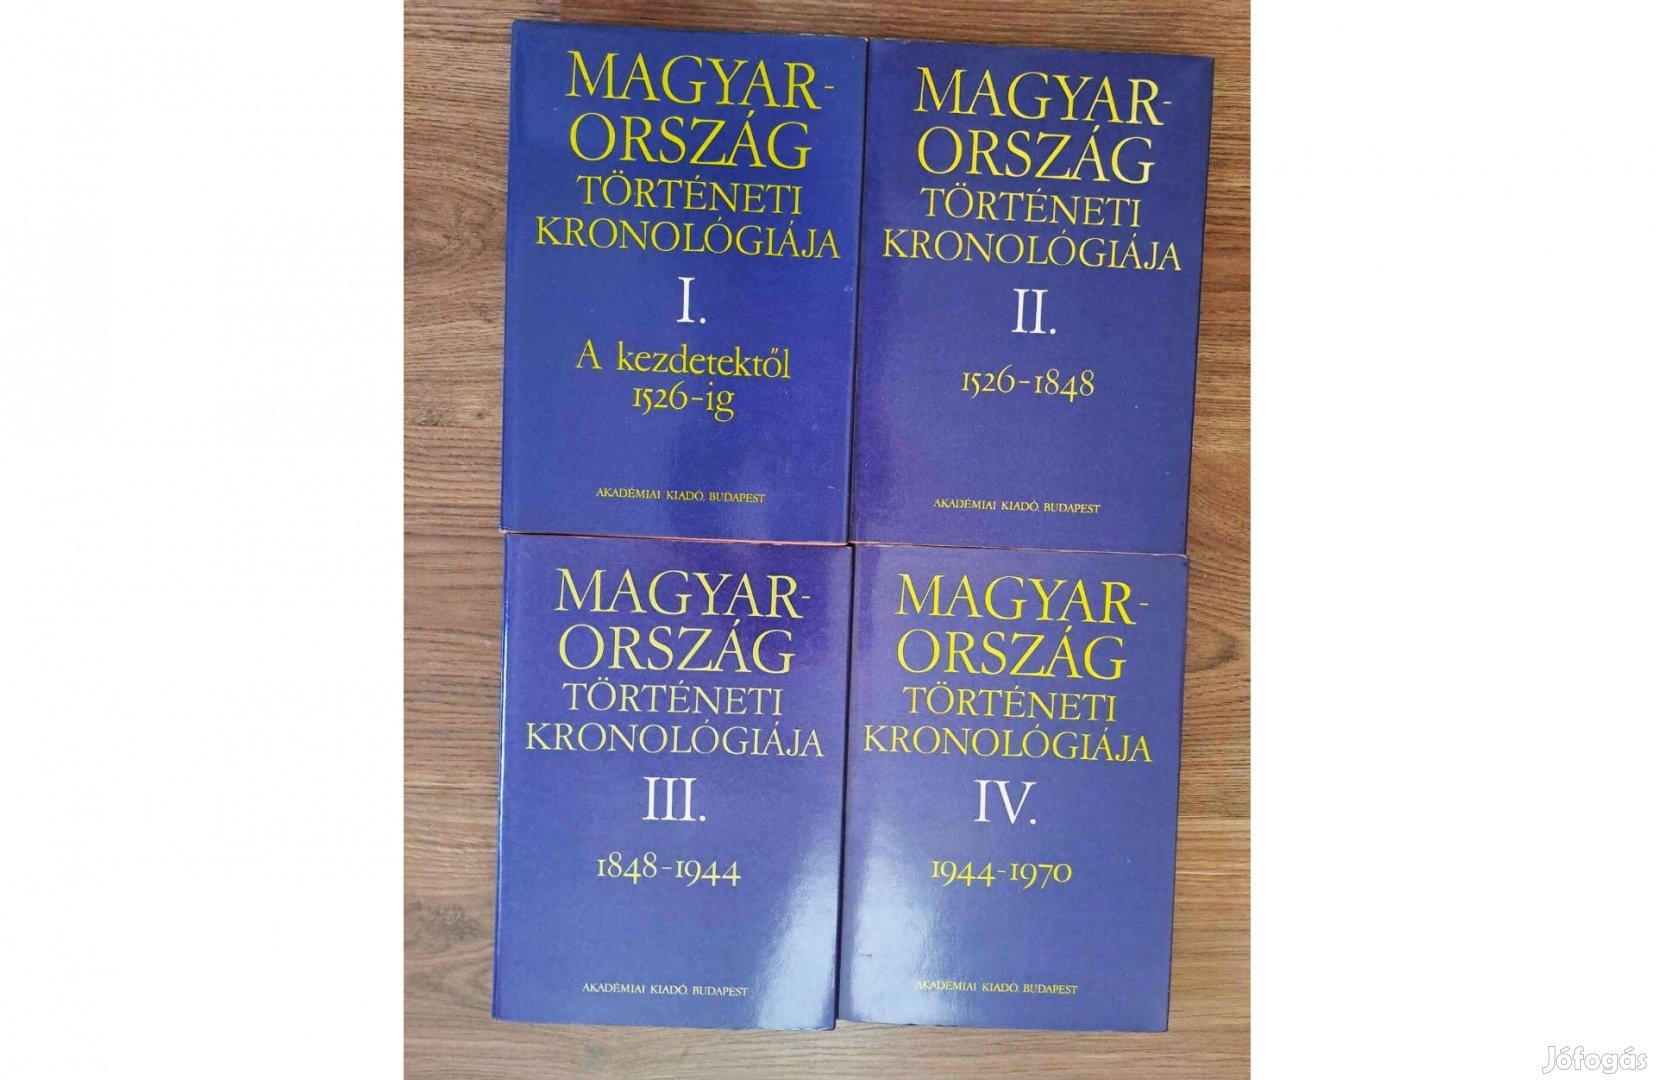 " Magyarország Történeti Kronológiája, 4 kötet